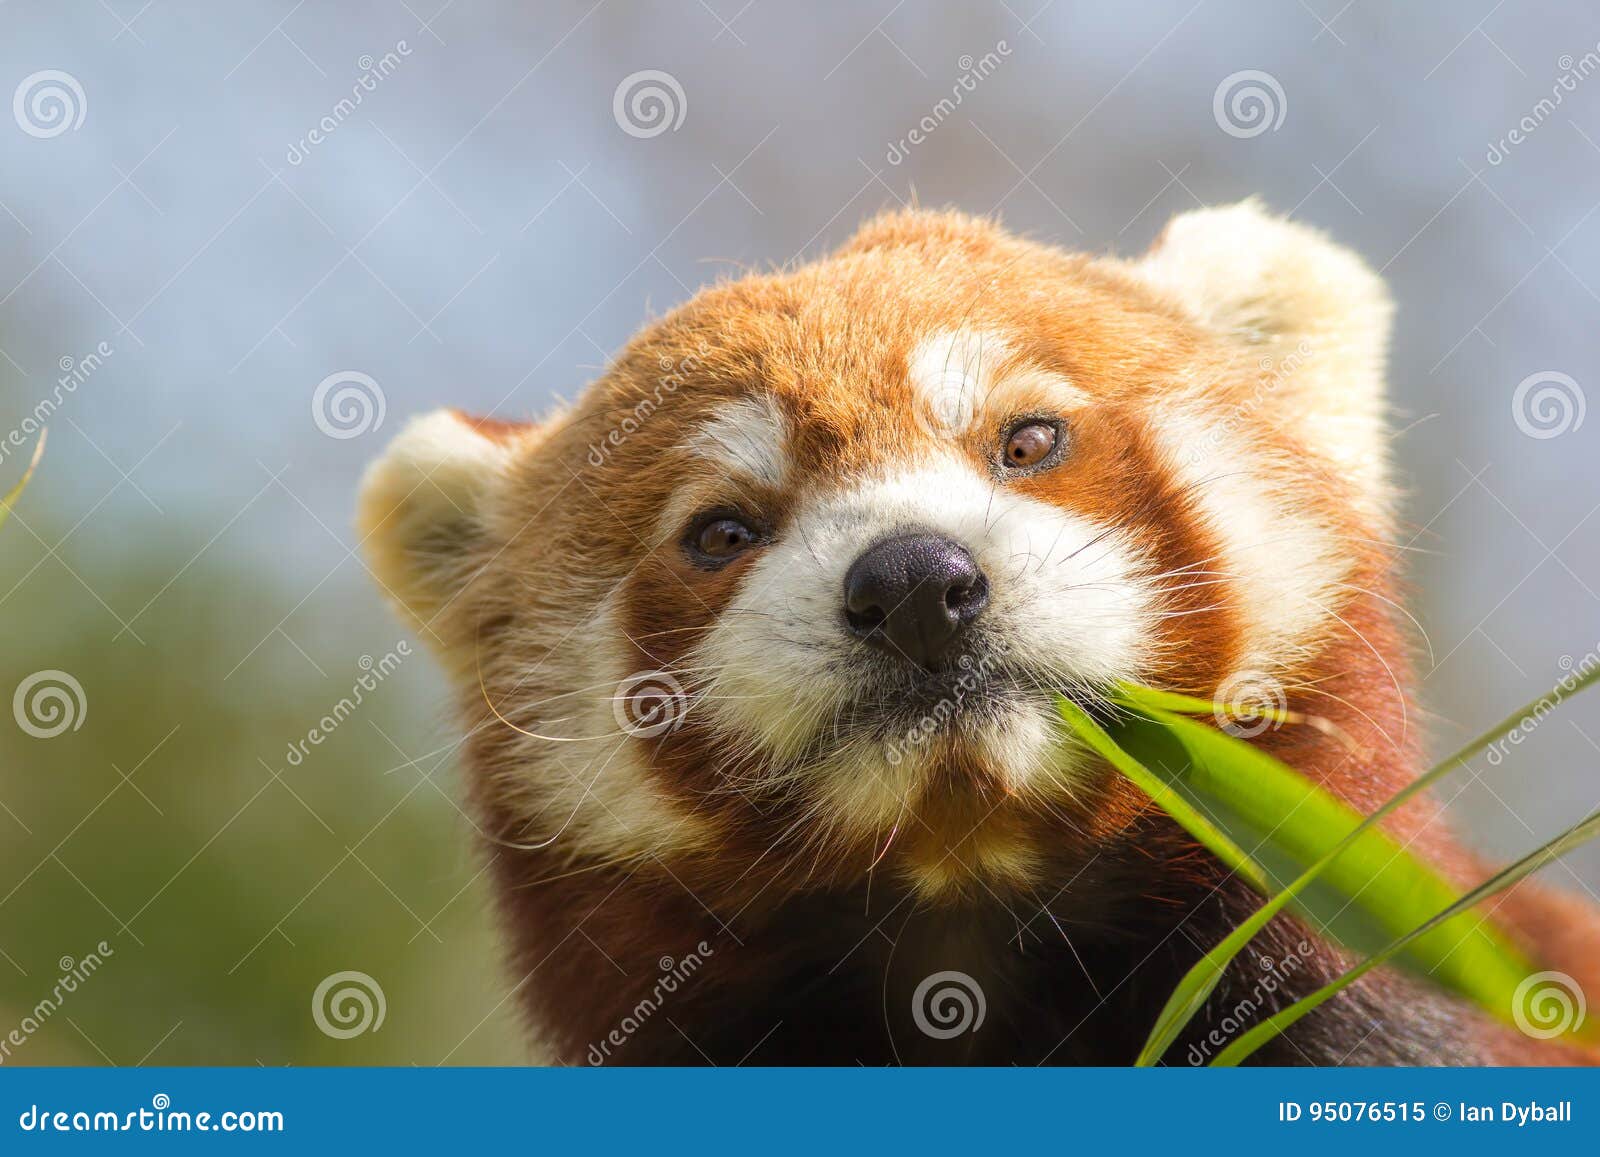 Cross Eyed Animal Cute Red Panda Eating Looking At Bamboo Shoot